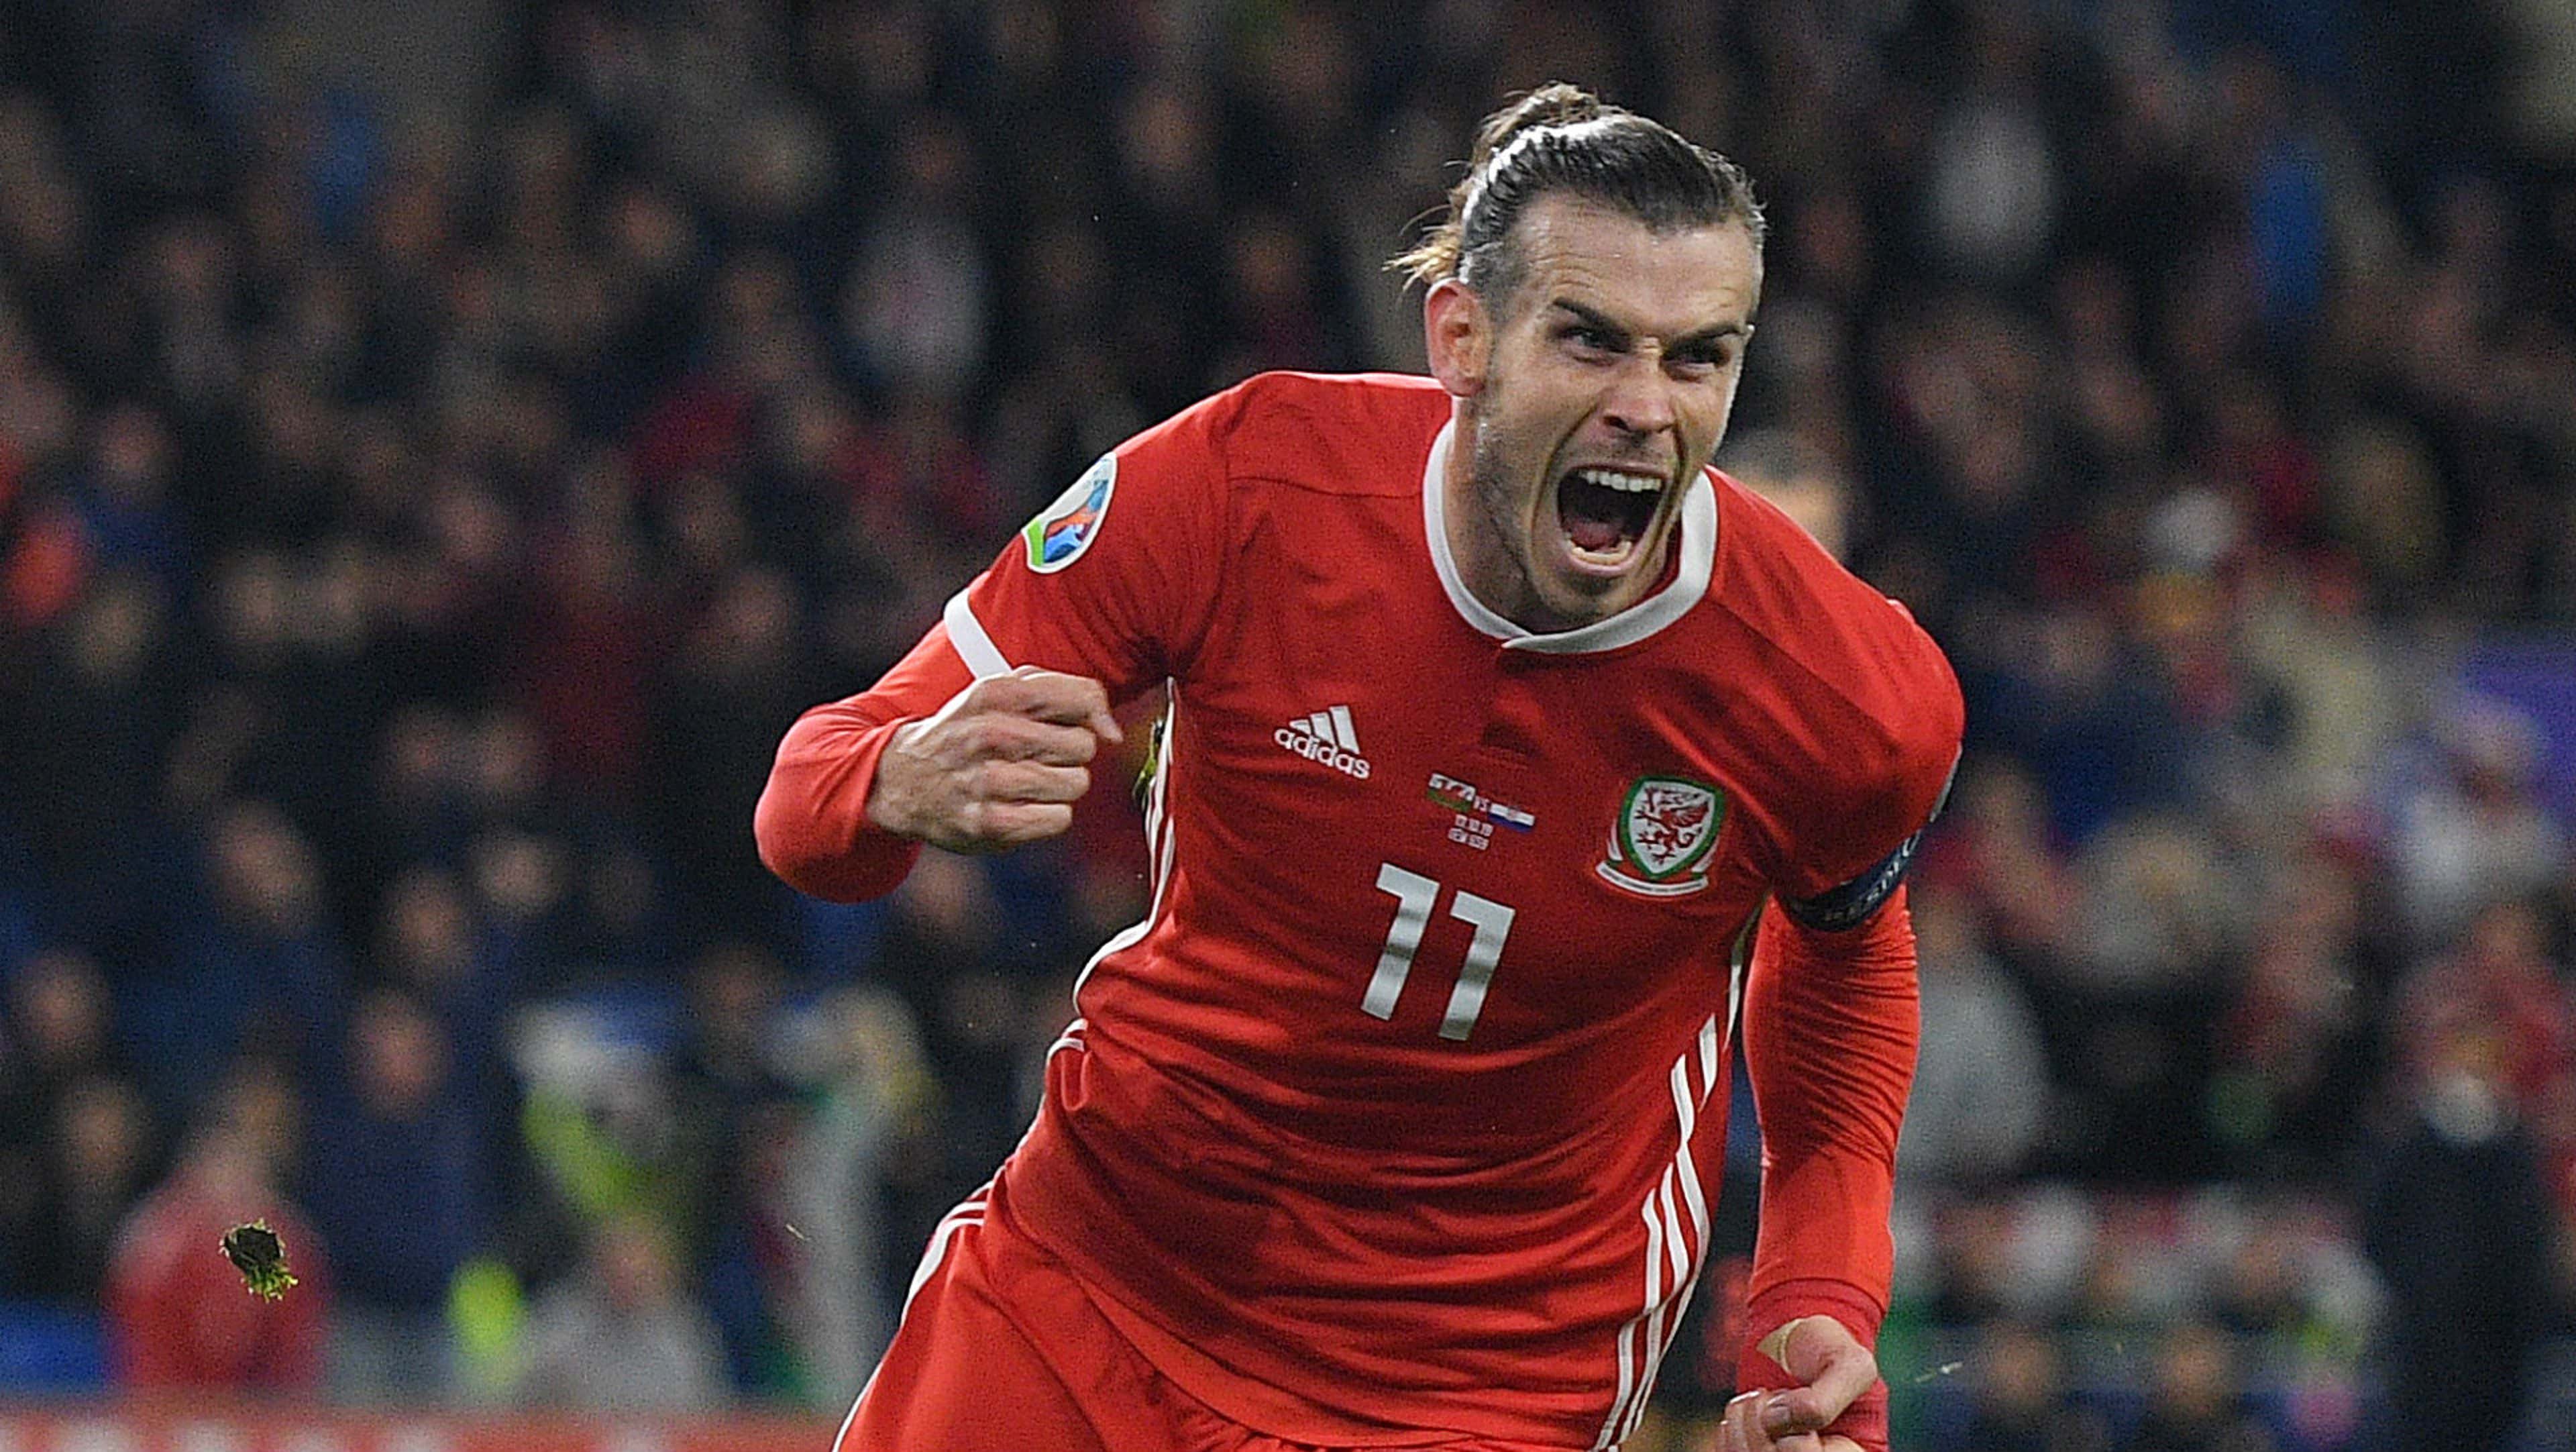 Bale ri e ironiza interesse do Getafe: Não vou jogar lá